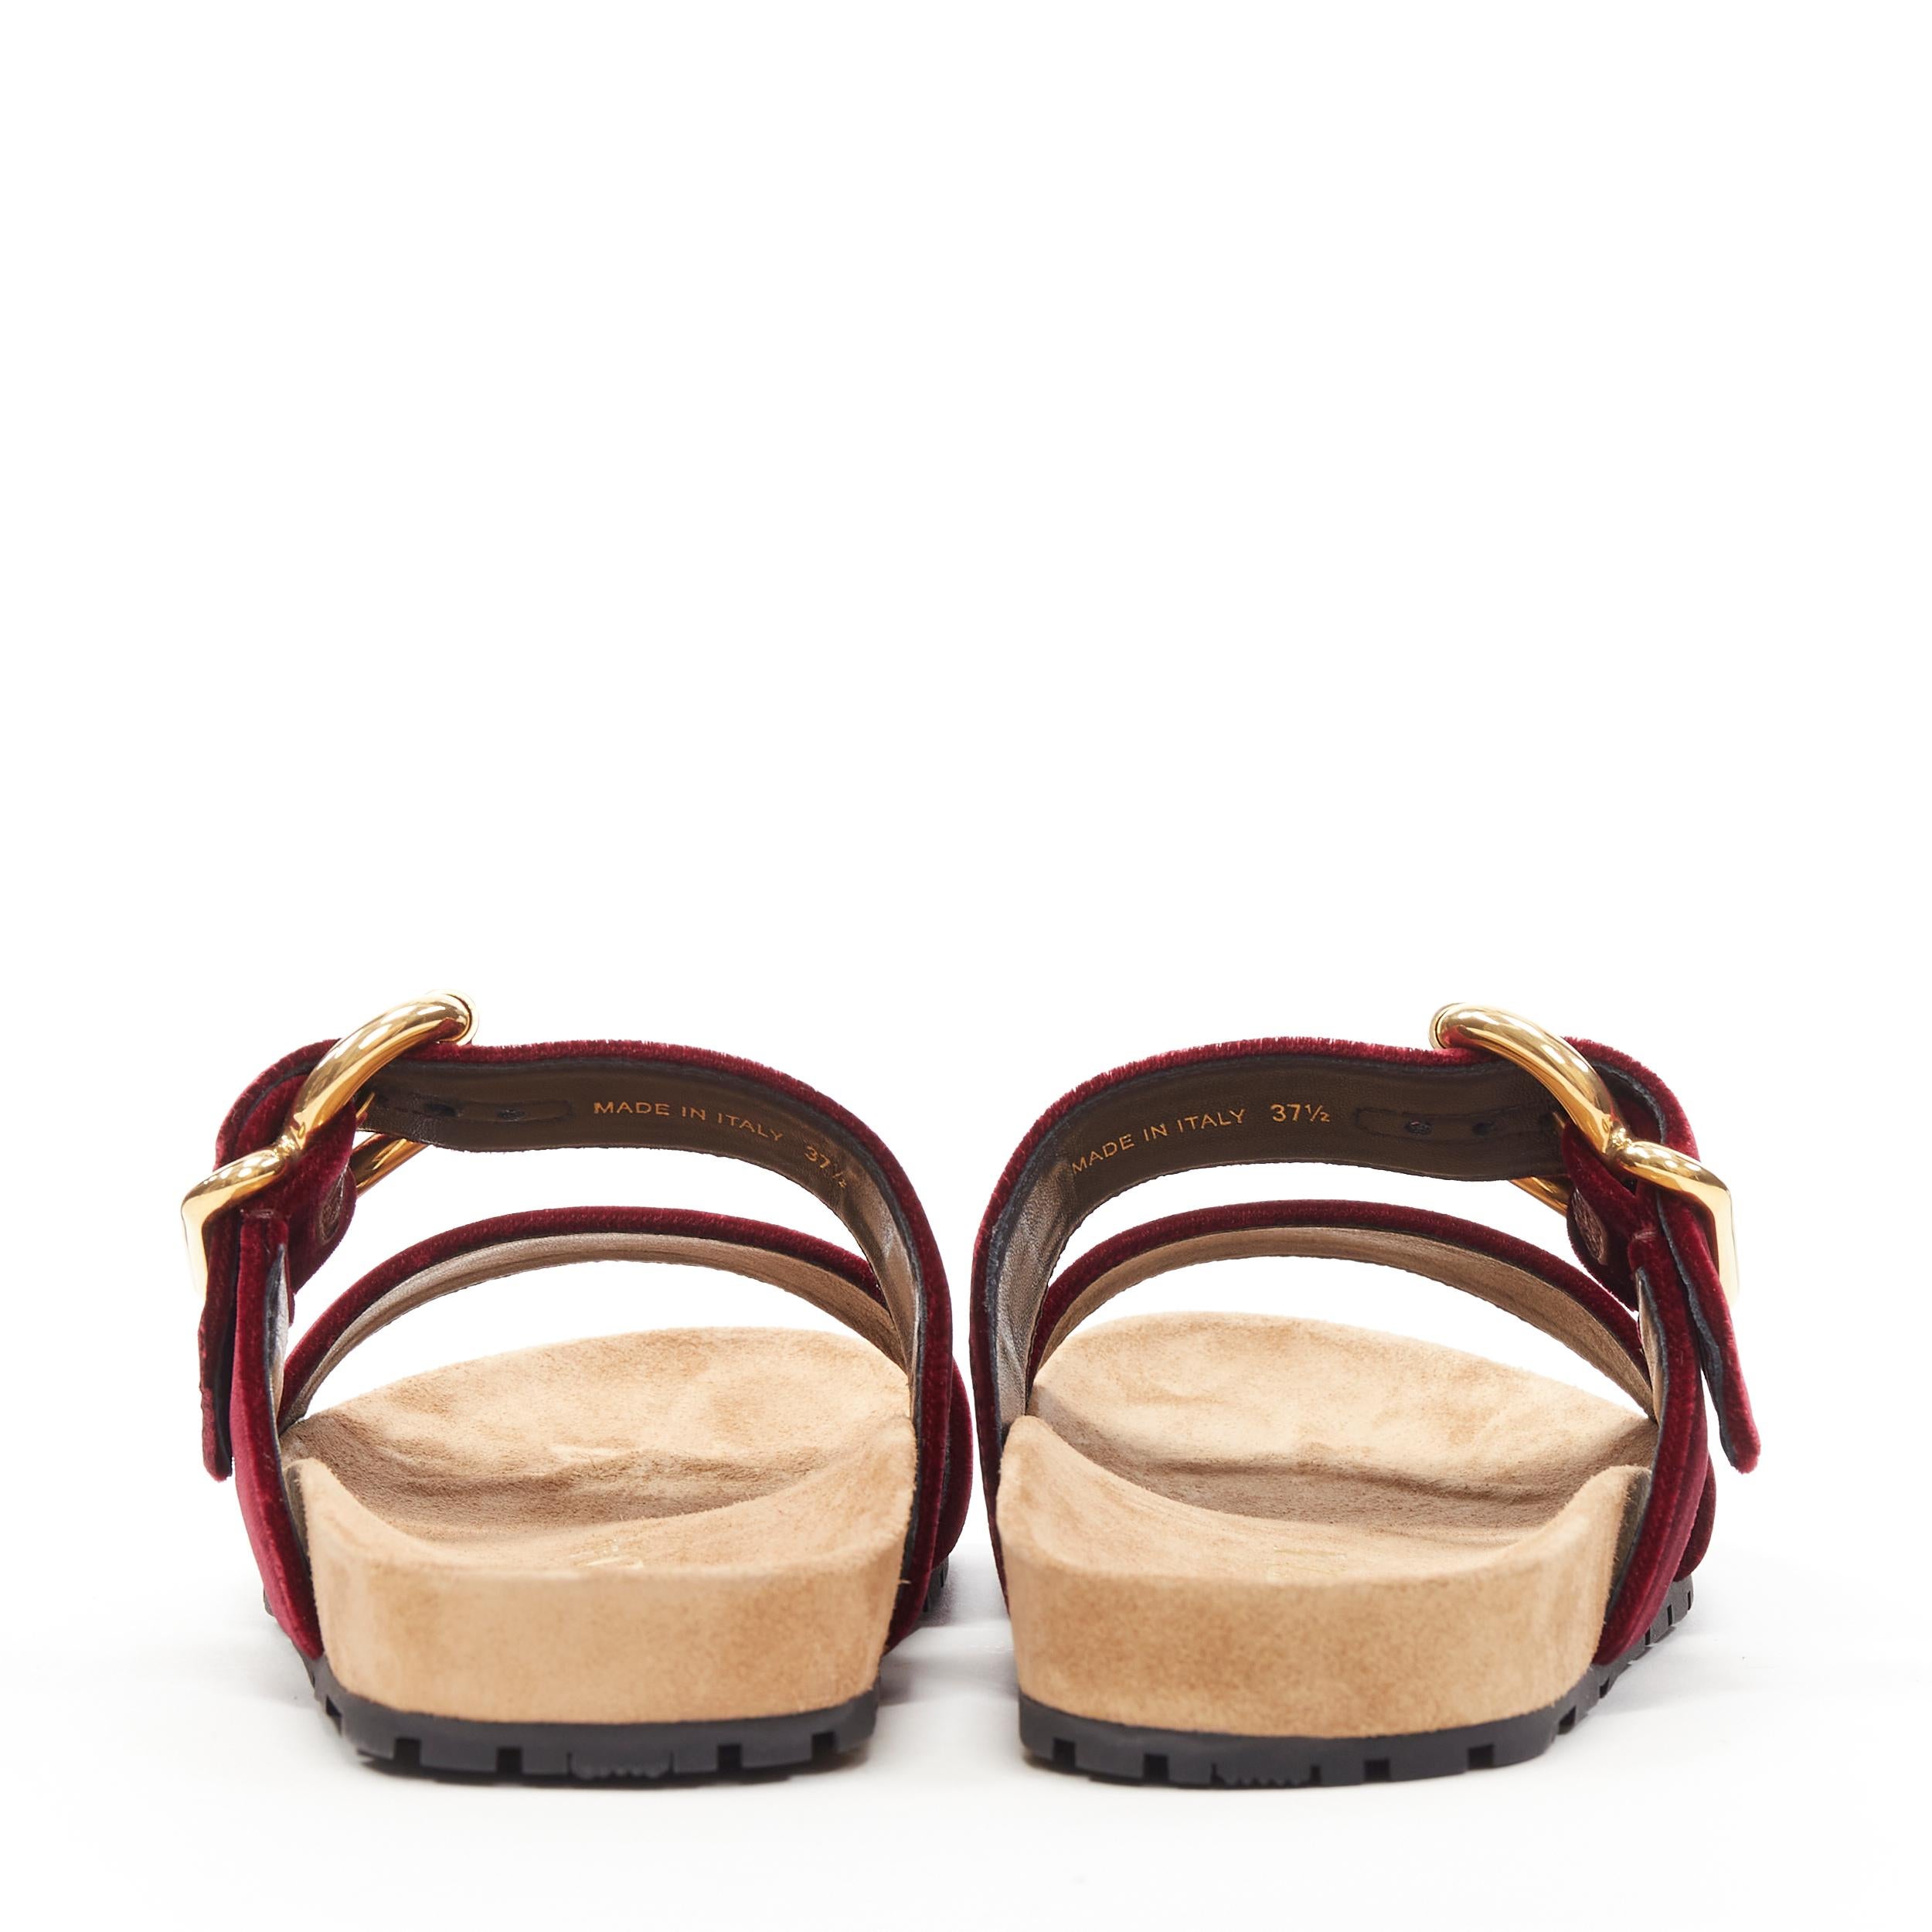 Women's new PRADA burgundy red velvet strap gold buckle slides summer sandals EU37.5